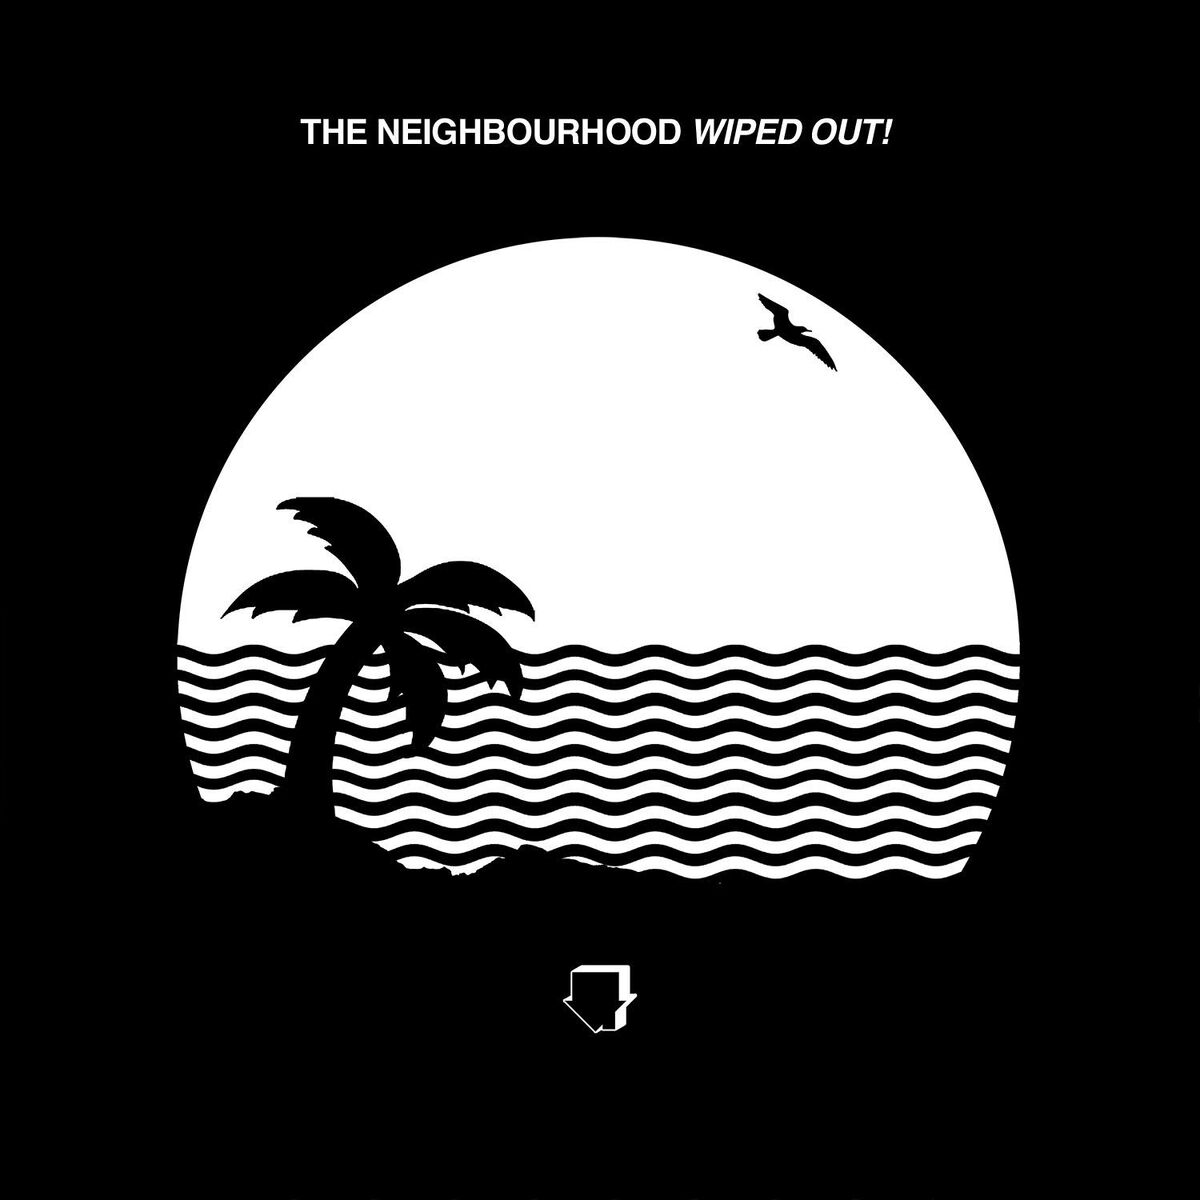 The Neighbourhood - Sweater Weather (Original/First video) 